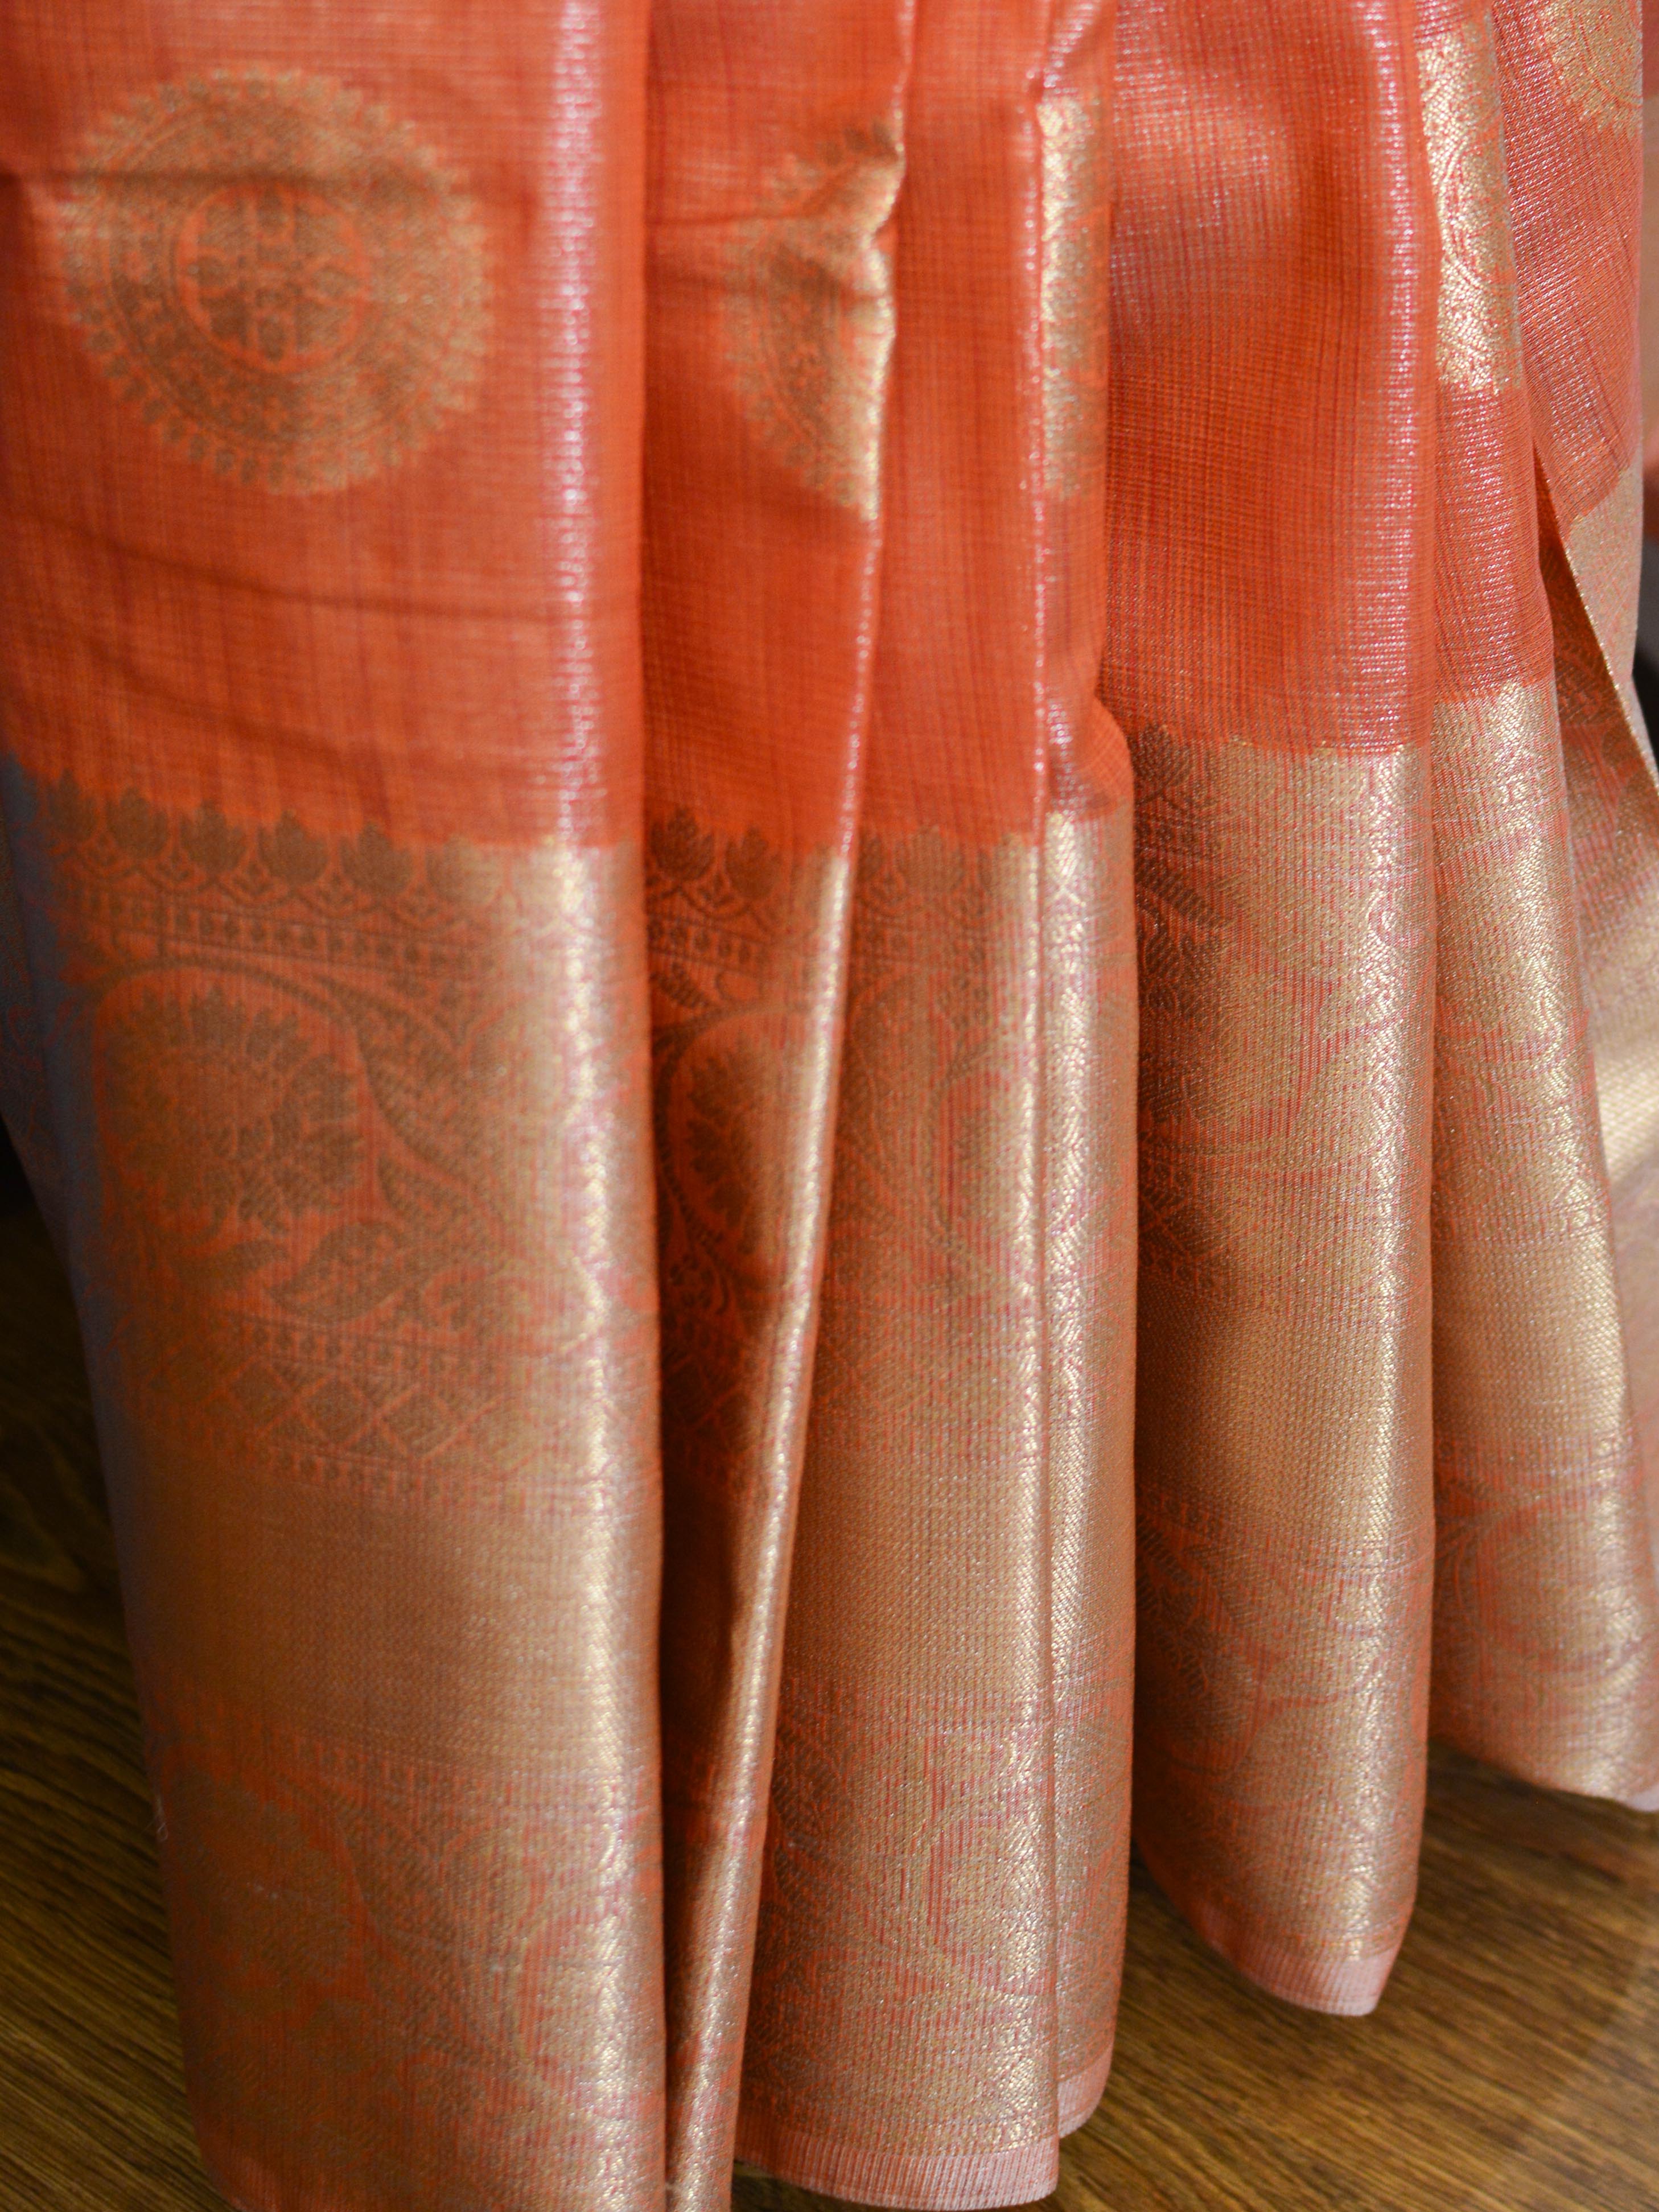 Banarasee Handwoven Broad Border Silver Zari Buta Design Tissue Saree-Peach